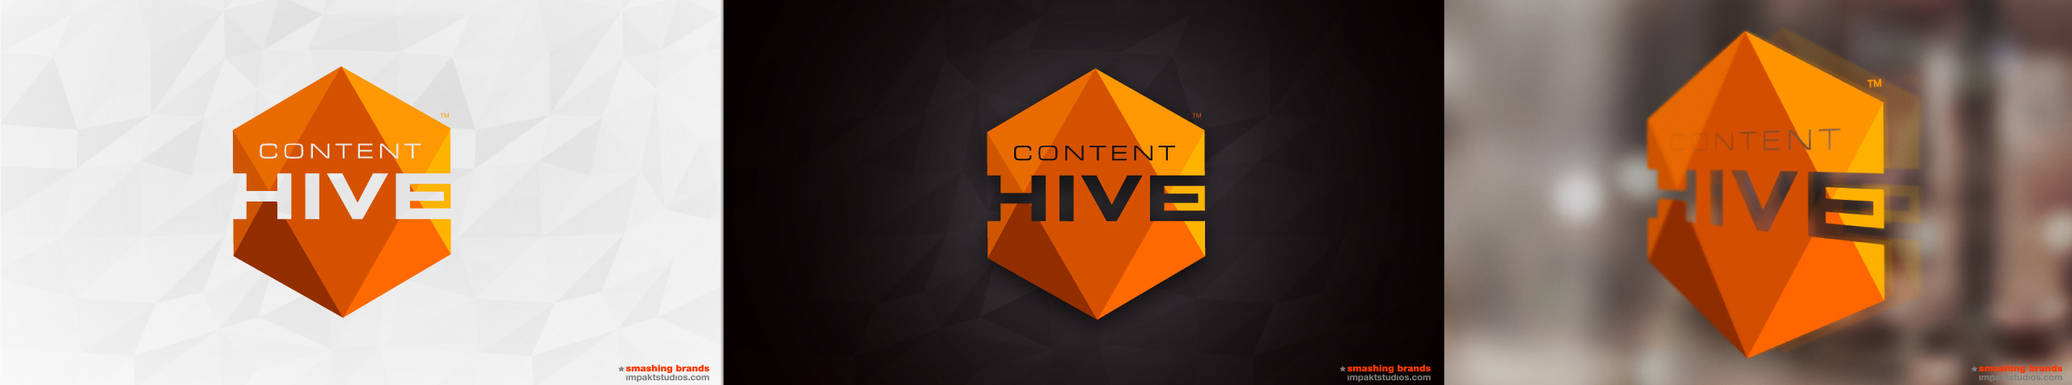 Content Hive Concept 4